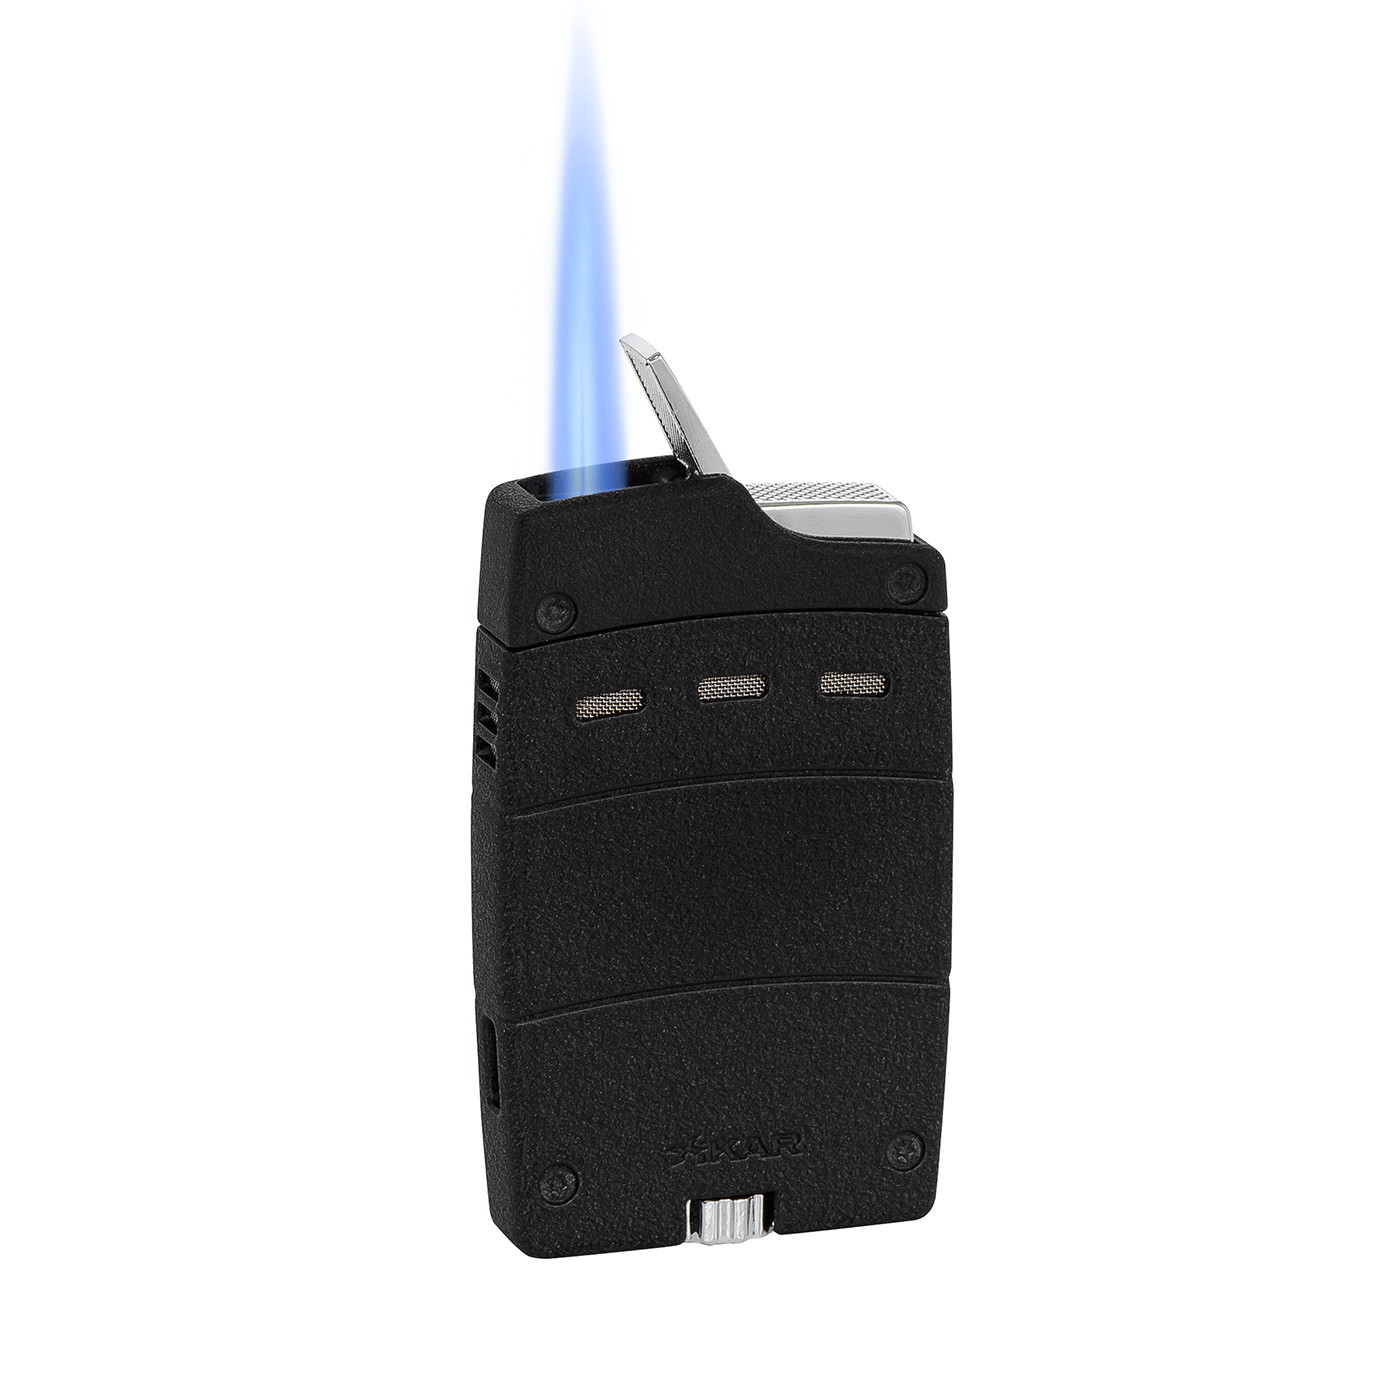 Xikar Ultra Mag Single Torch Lighter